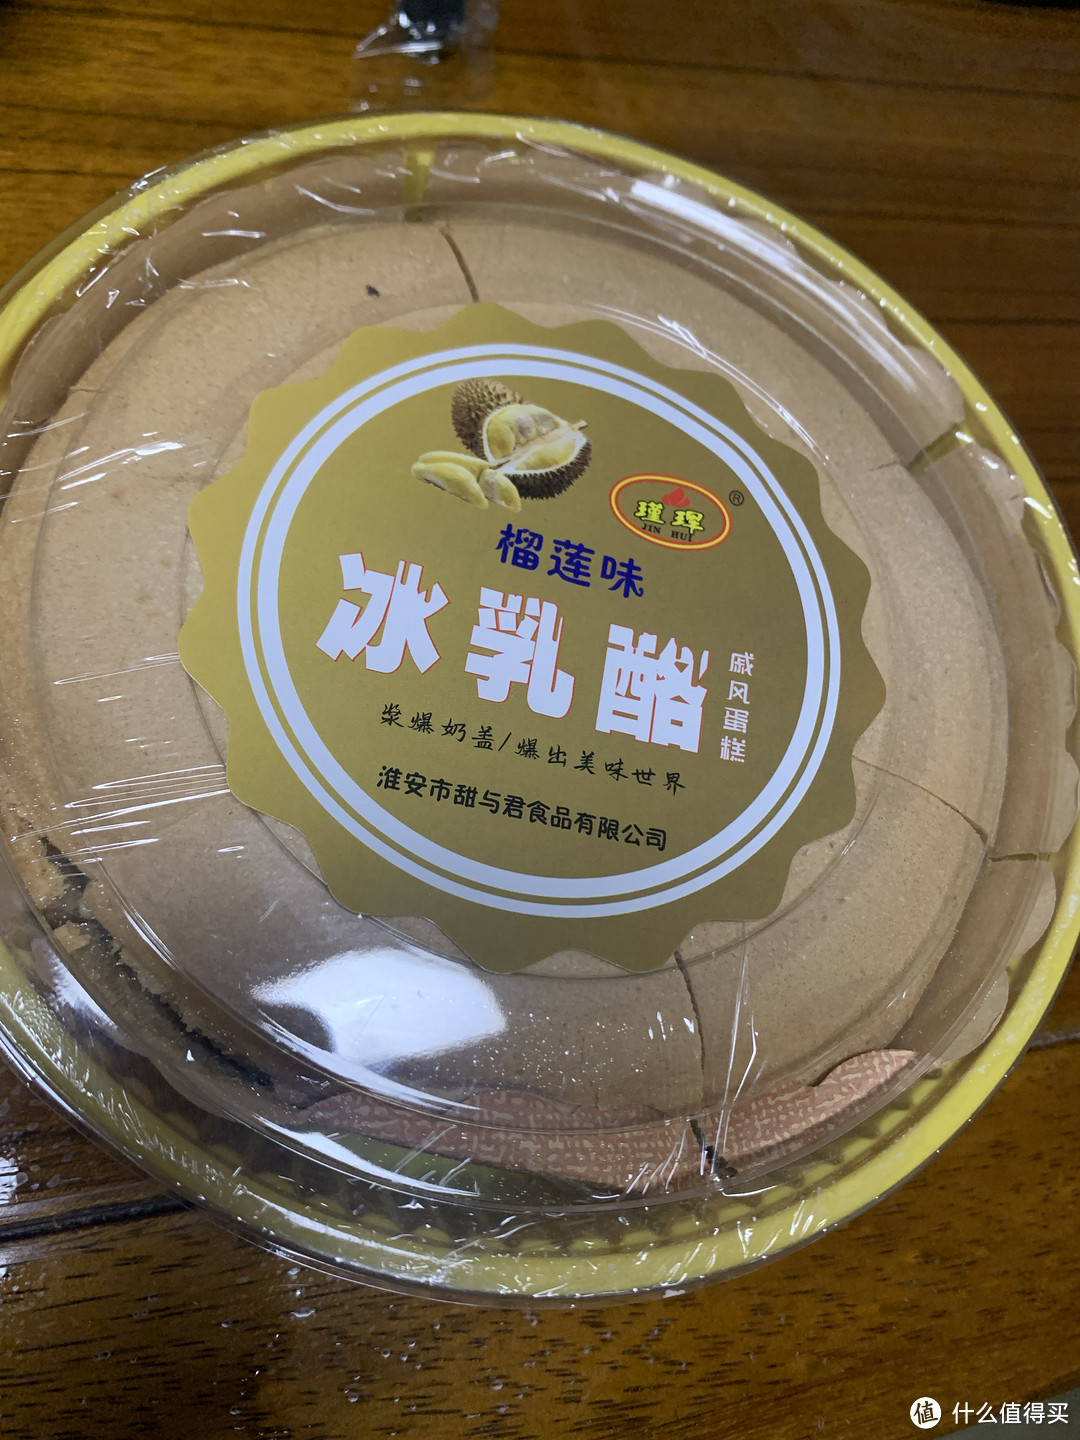 京东买的27.3两盒的冰乳酪蛋糕开箱